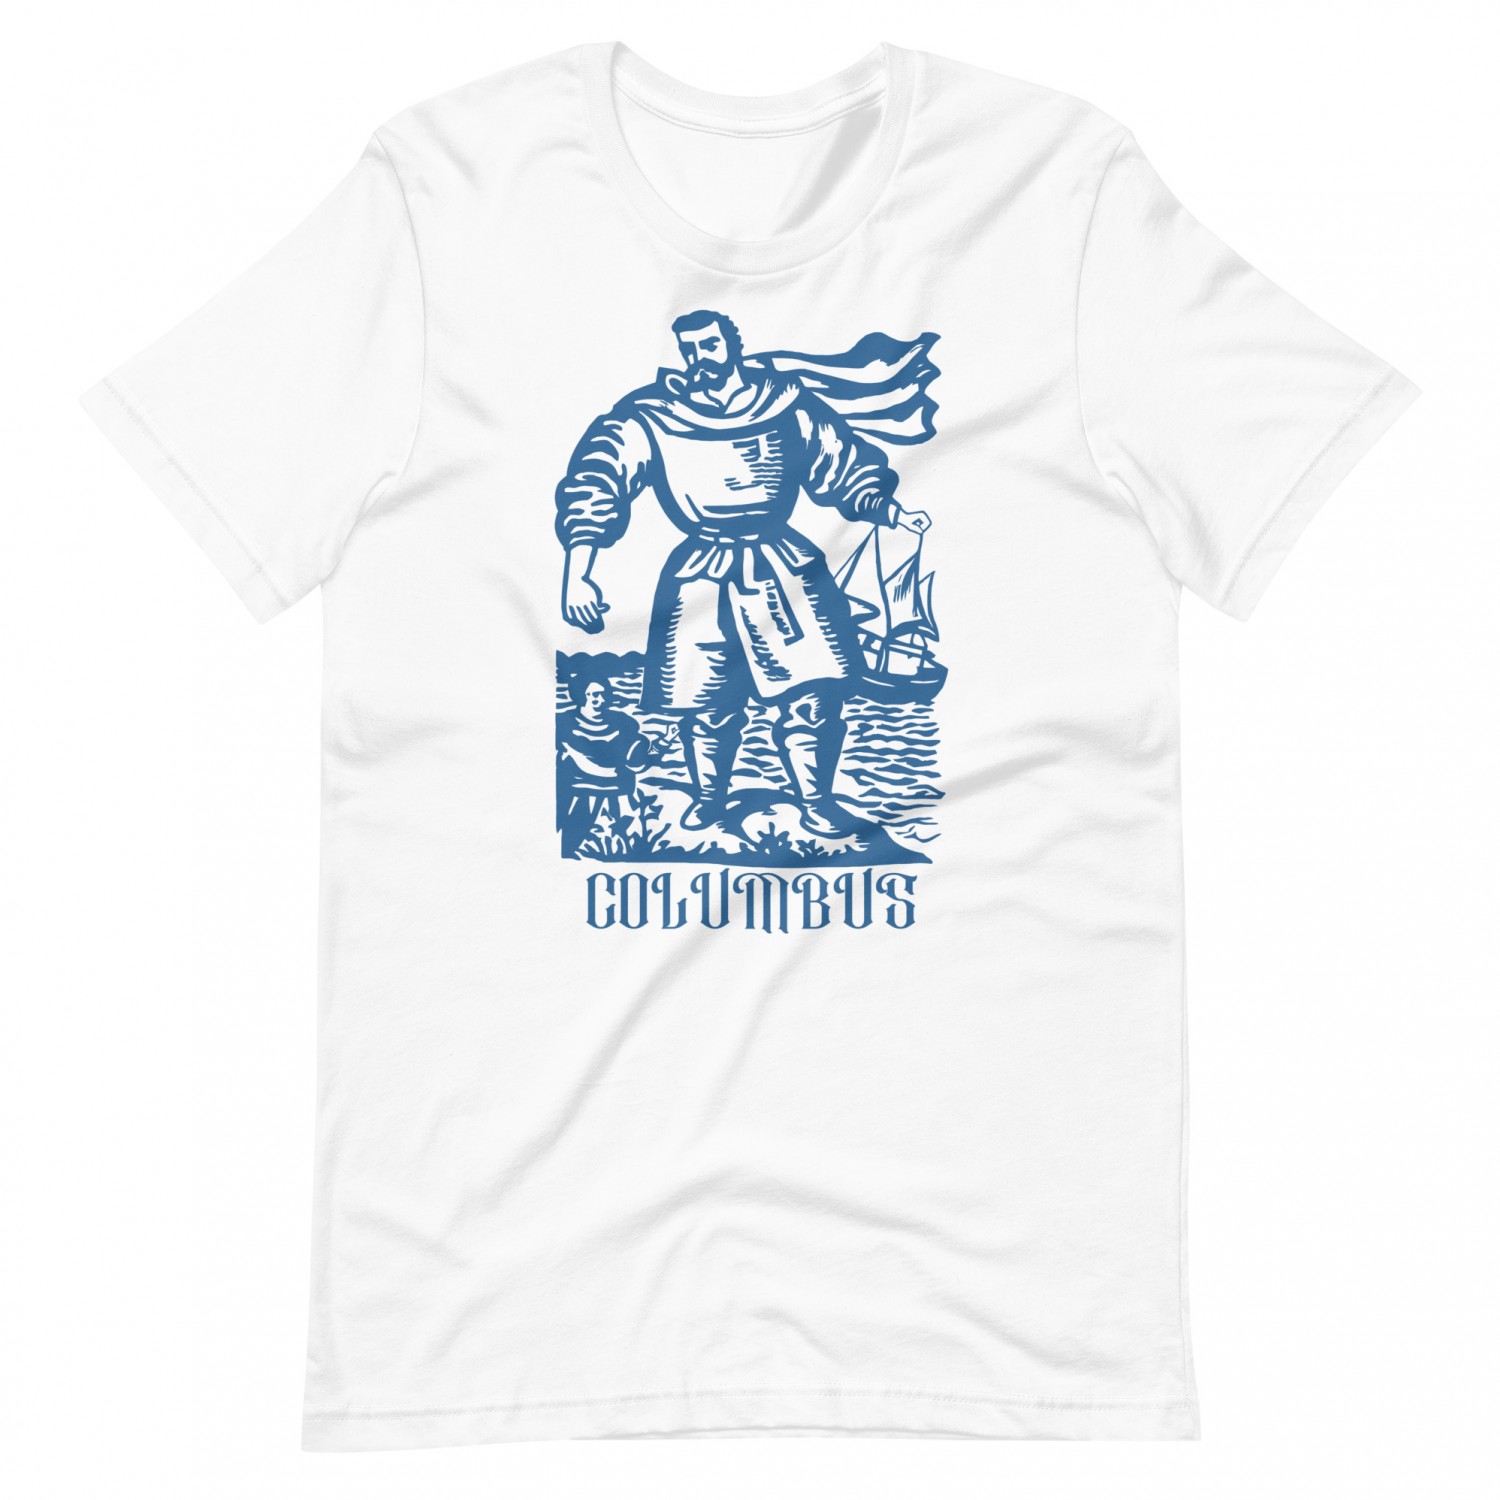 Kup koszulkę „Columbus”.